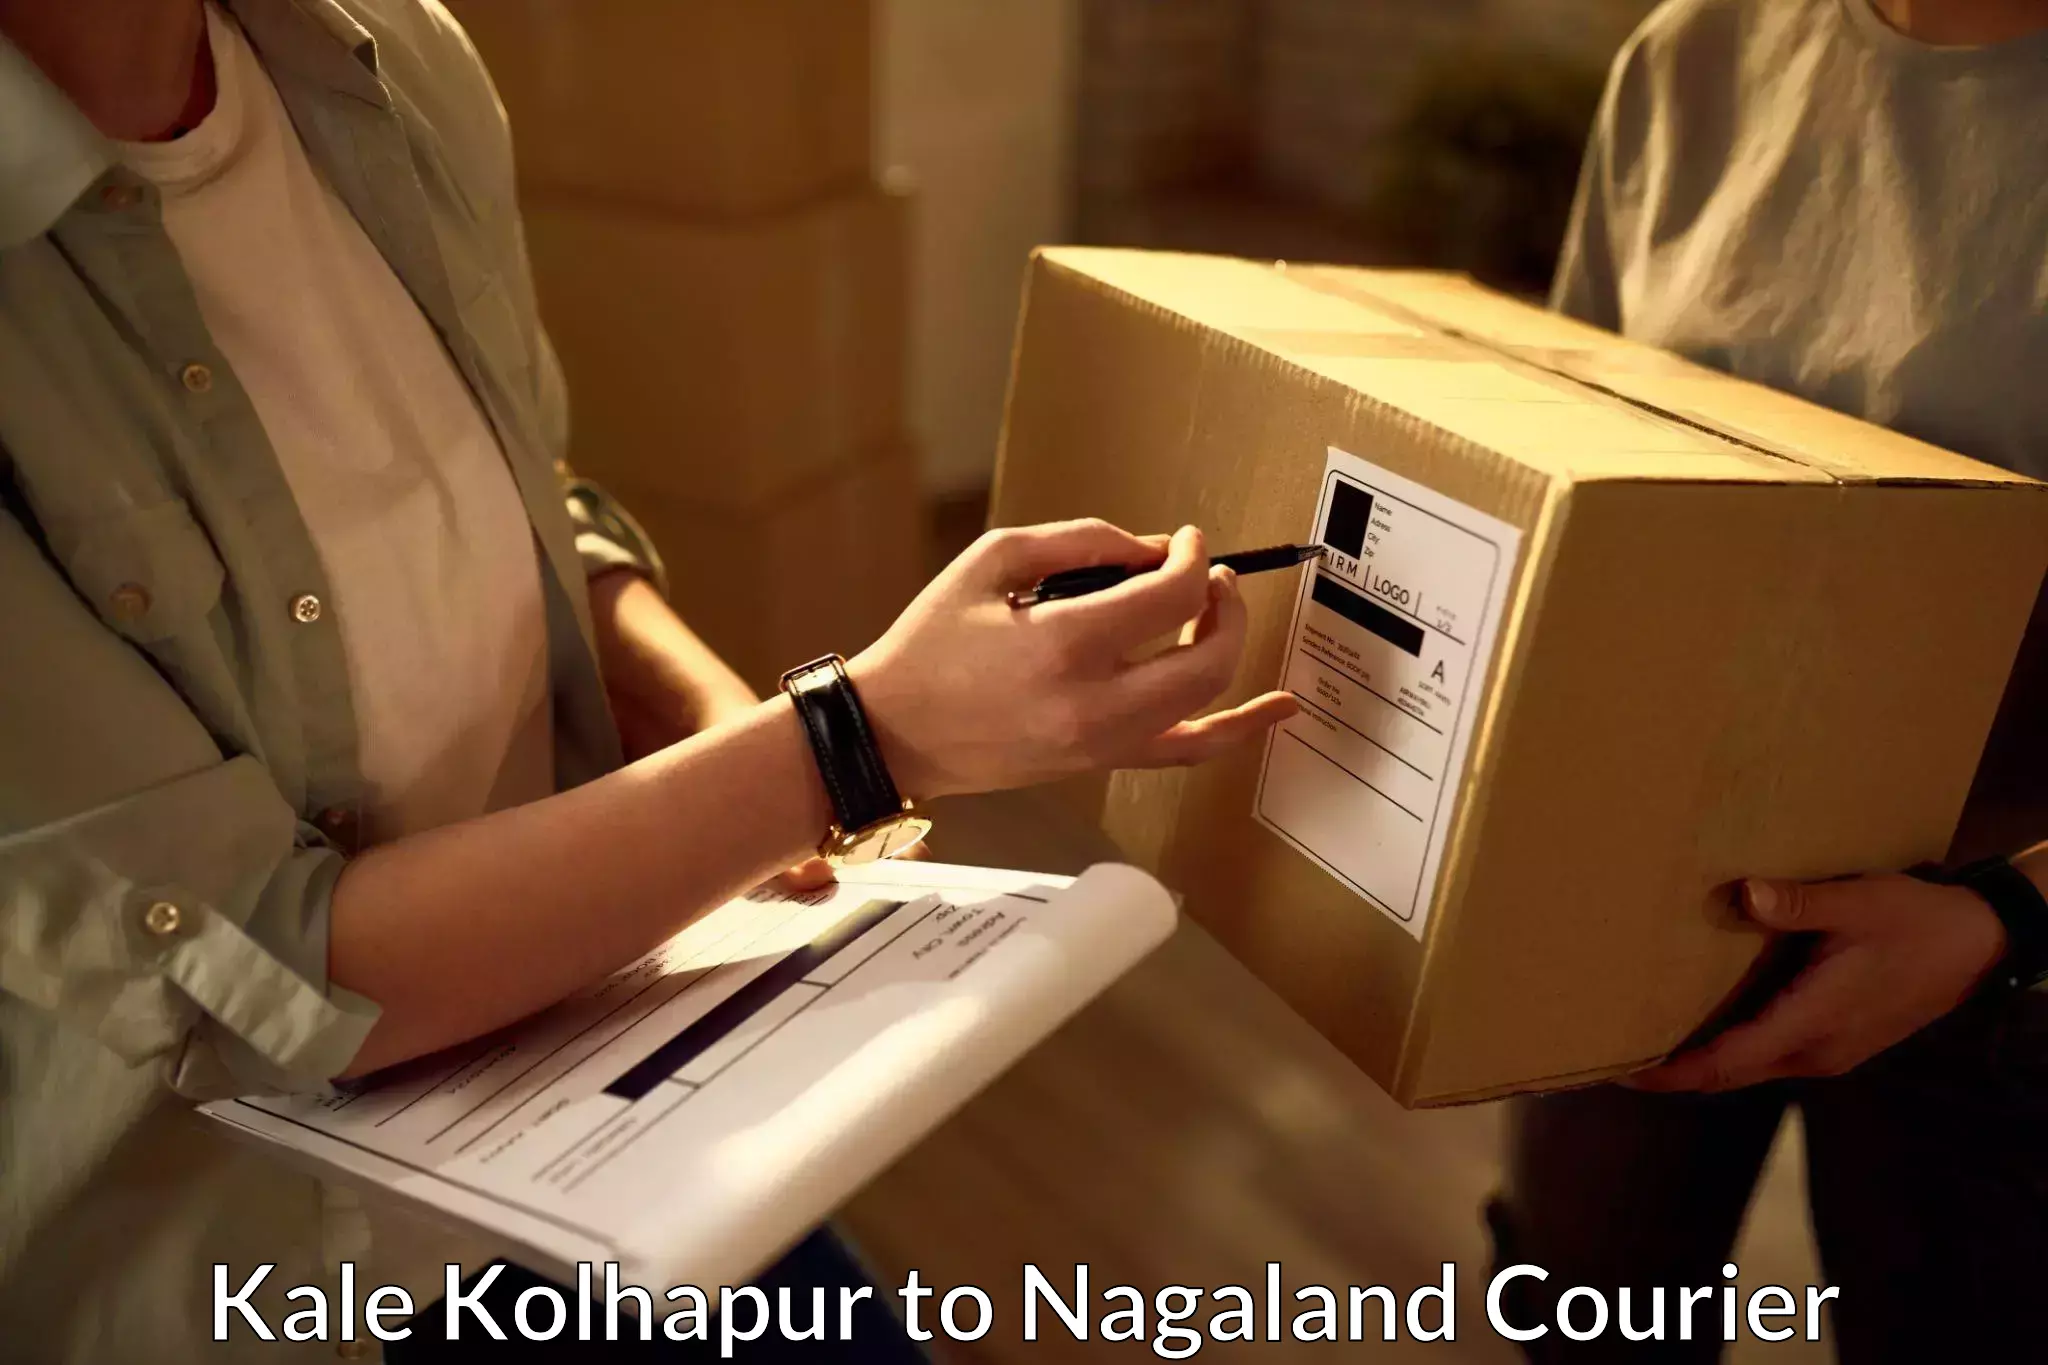 Next-day freight services Kale Kolhapur to Wokha